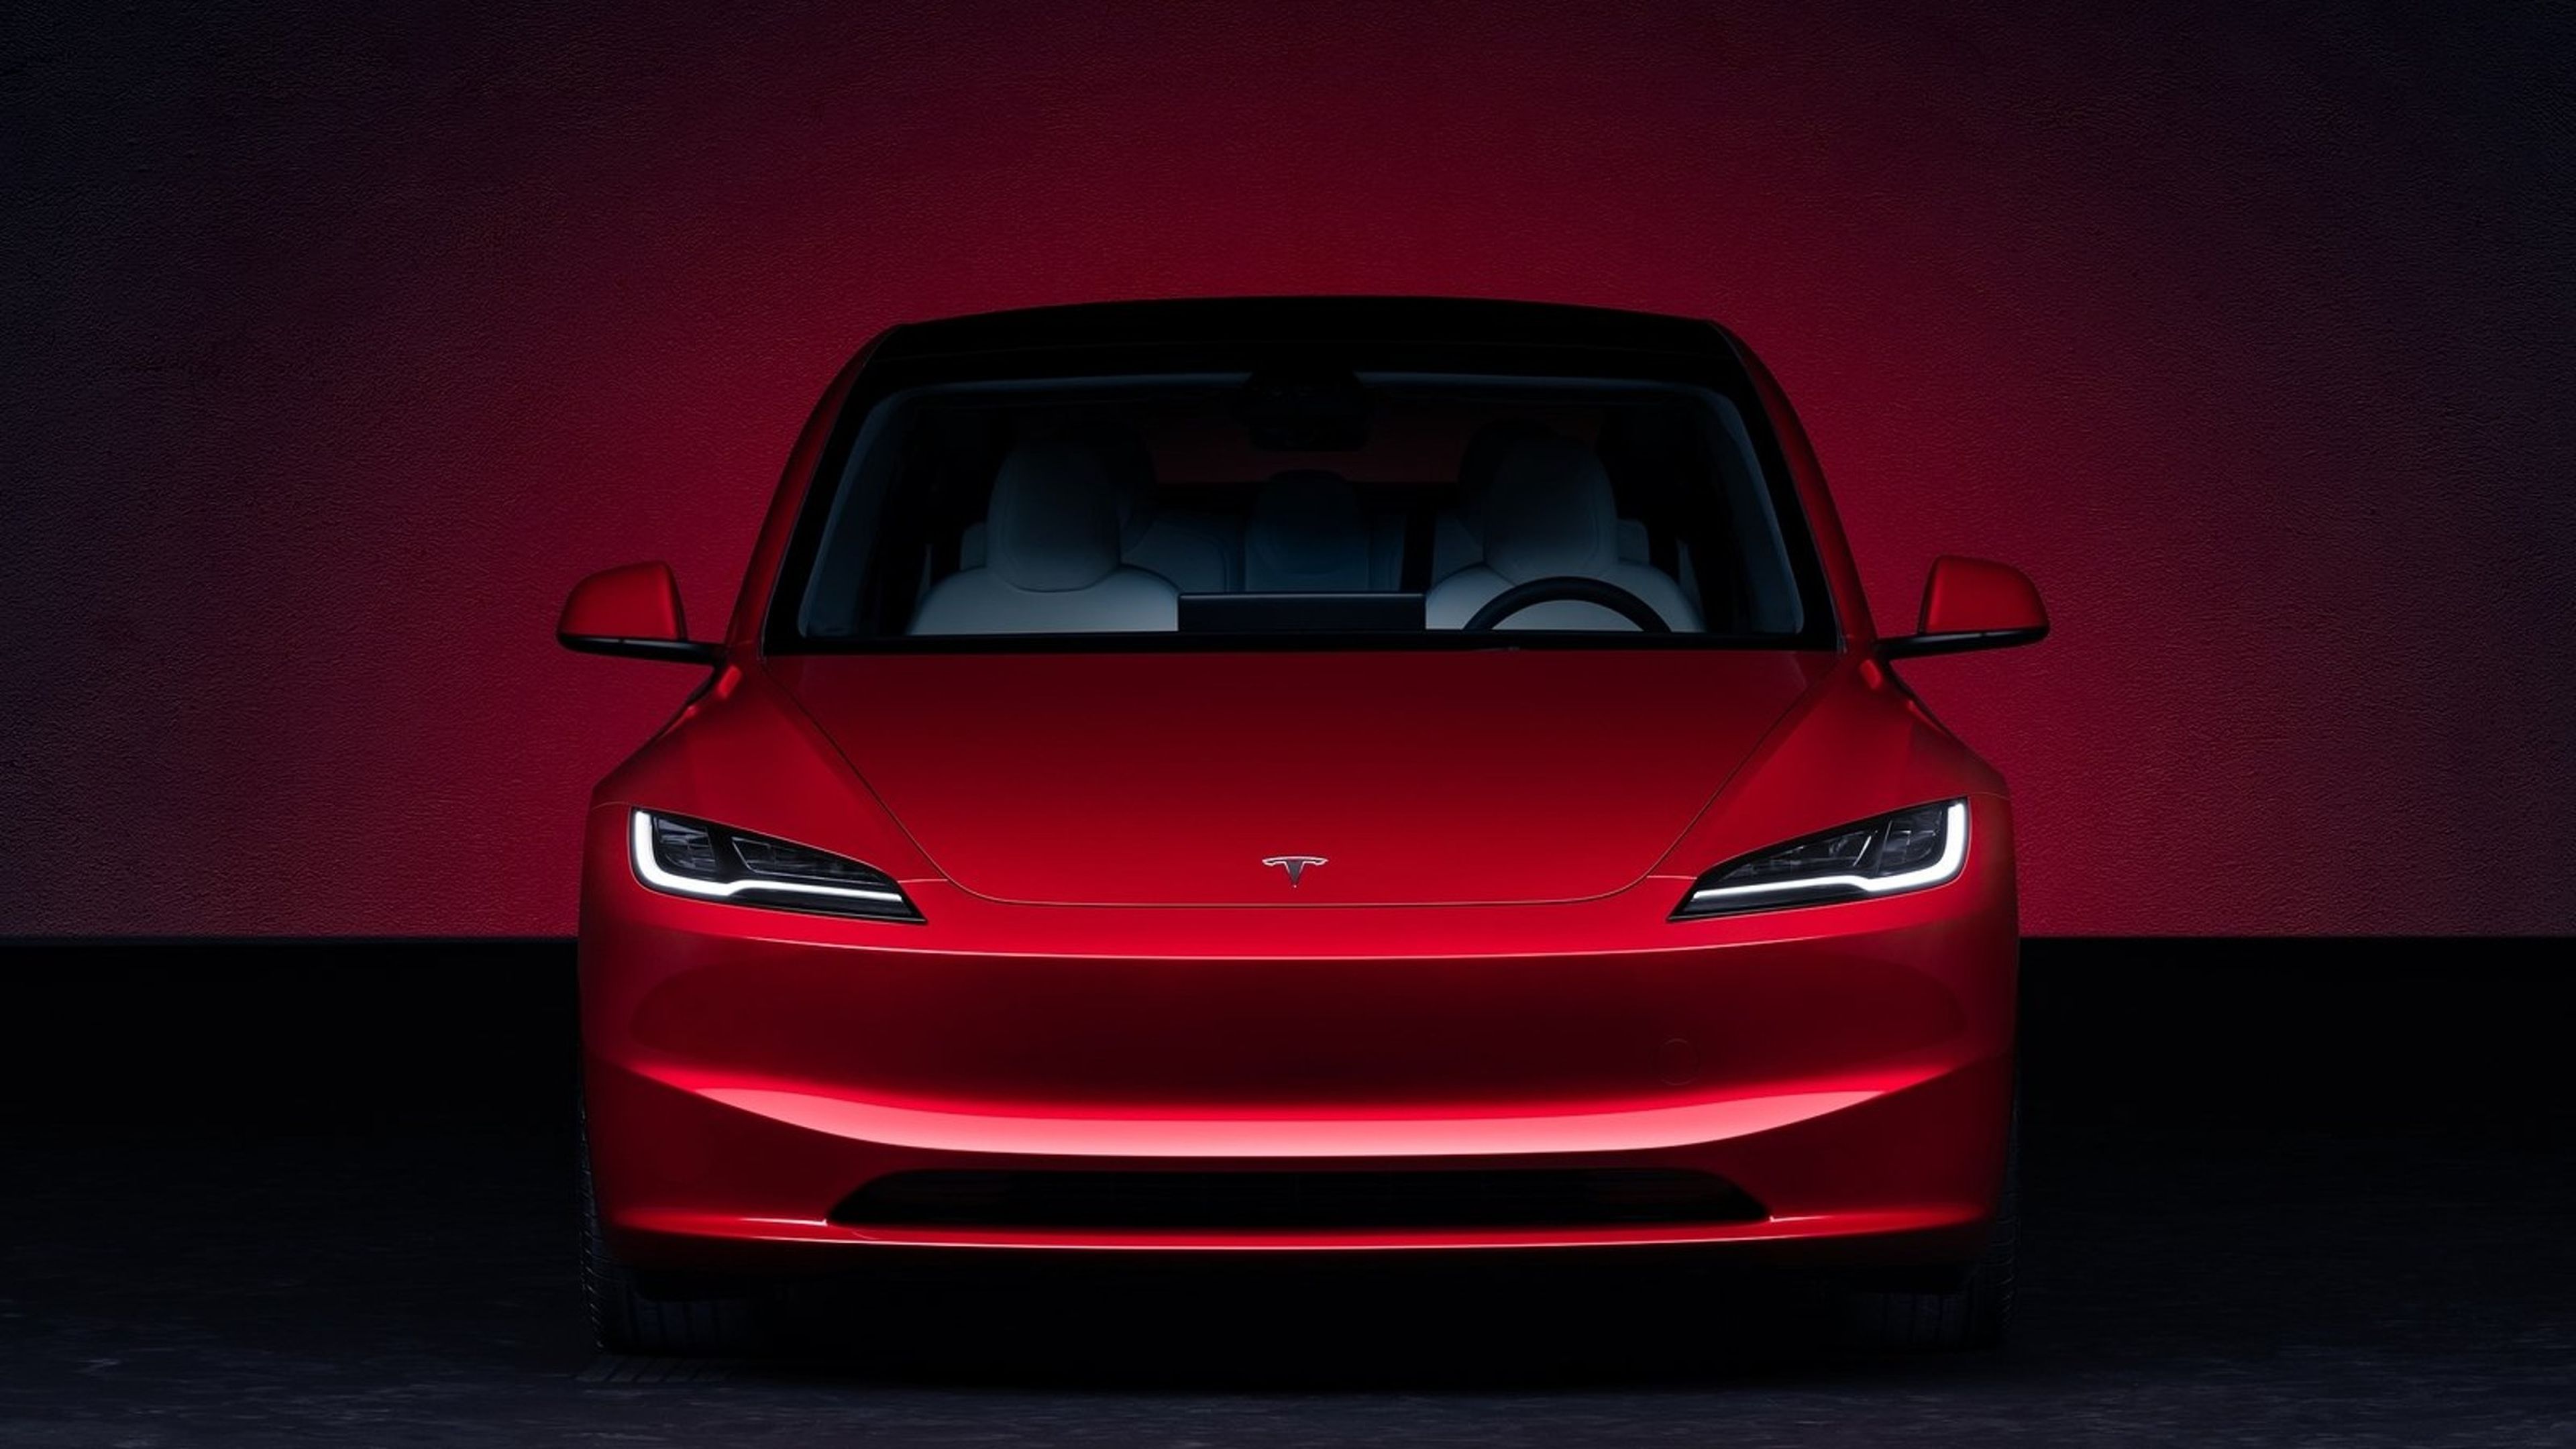 Despidos, el lado más oscuro de Tesla